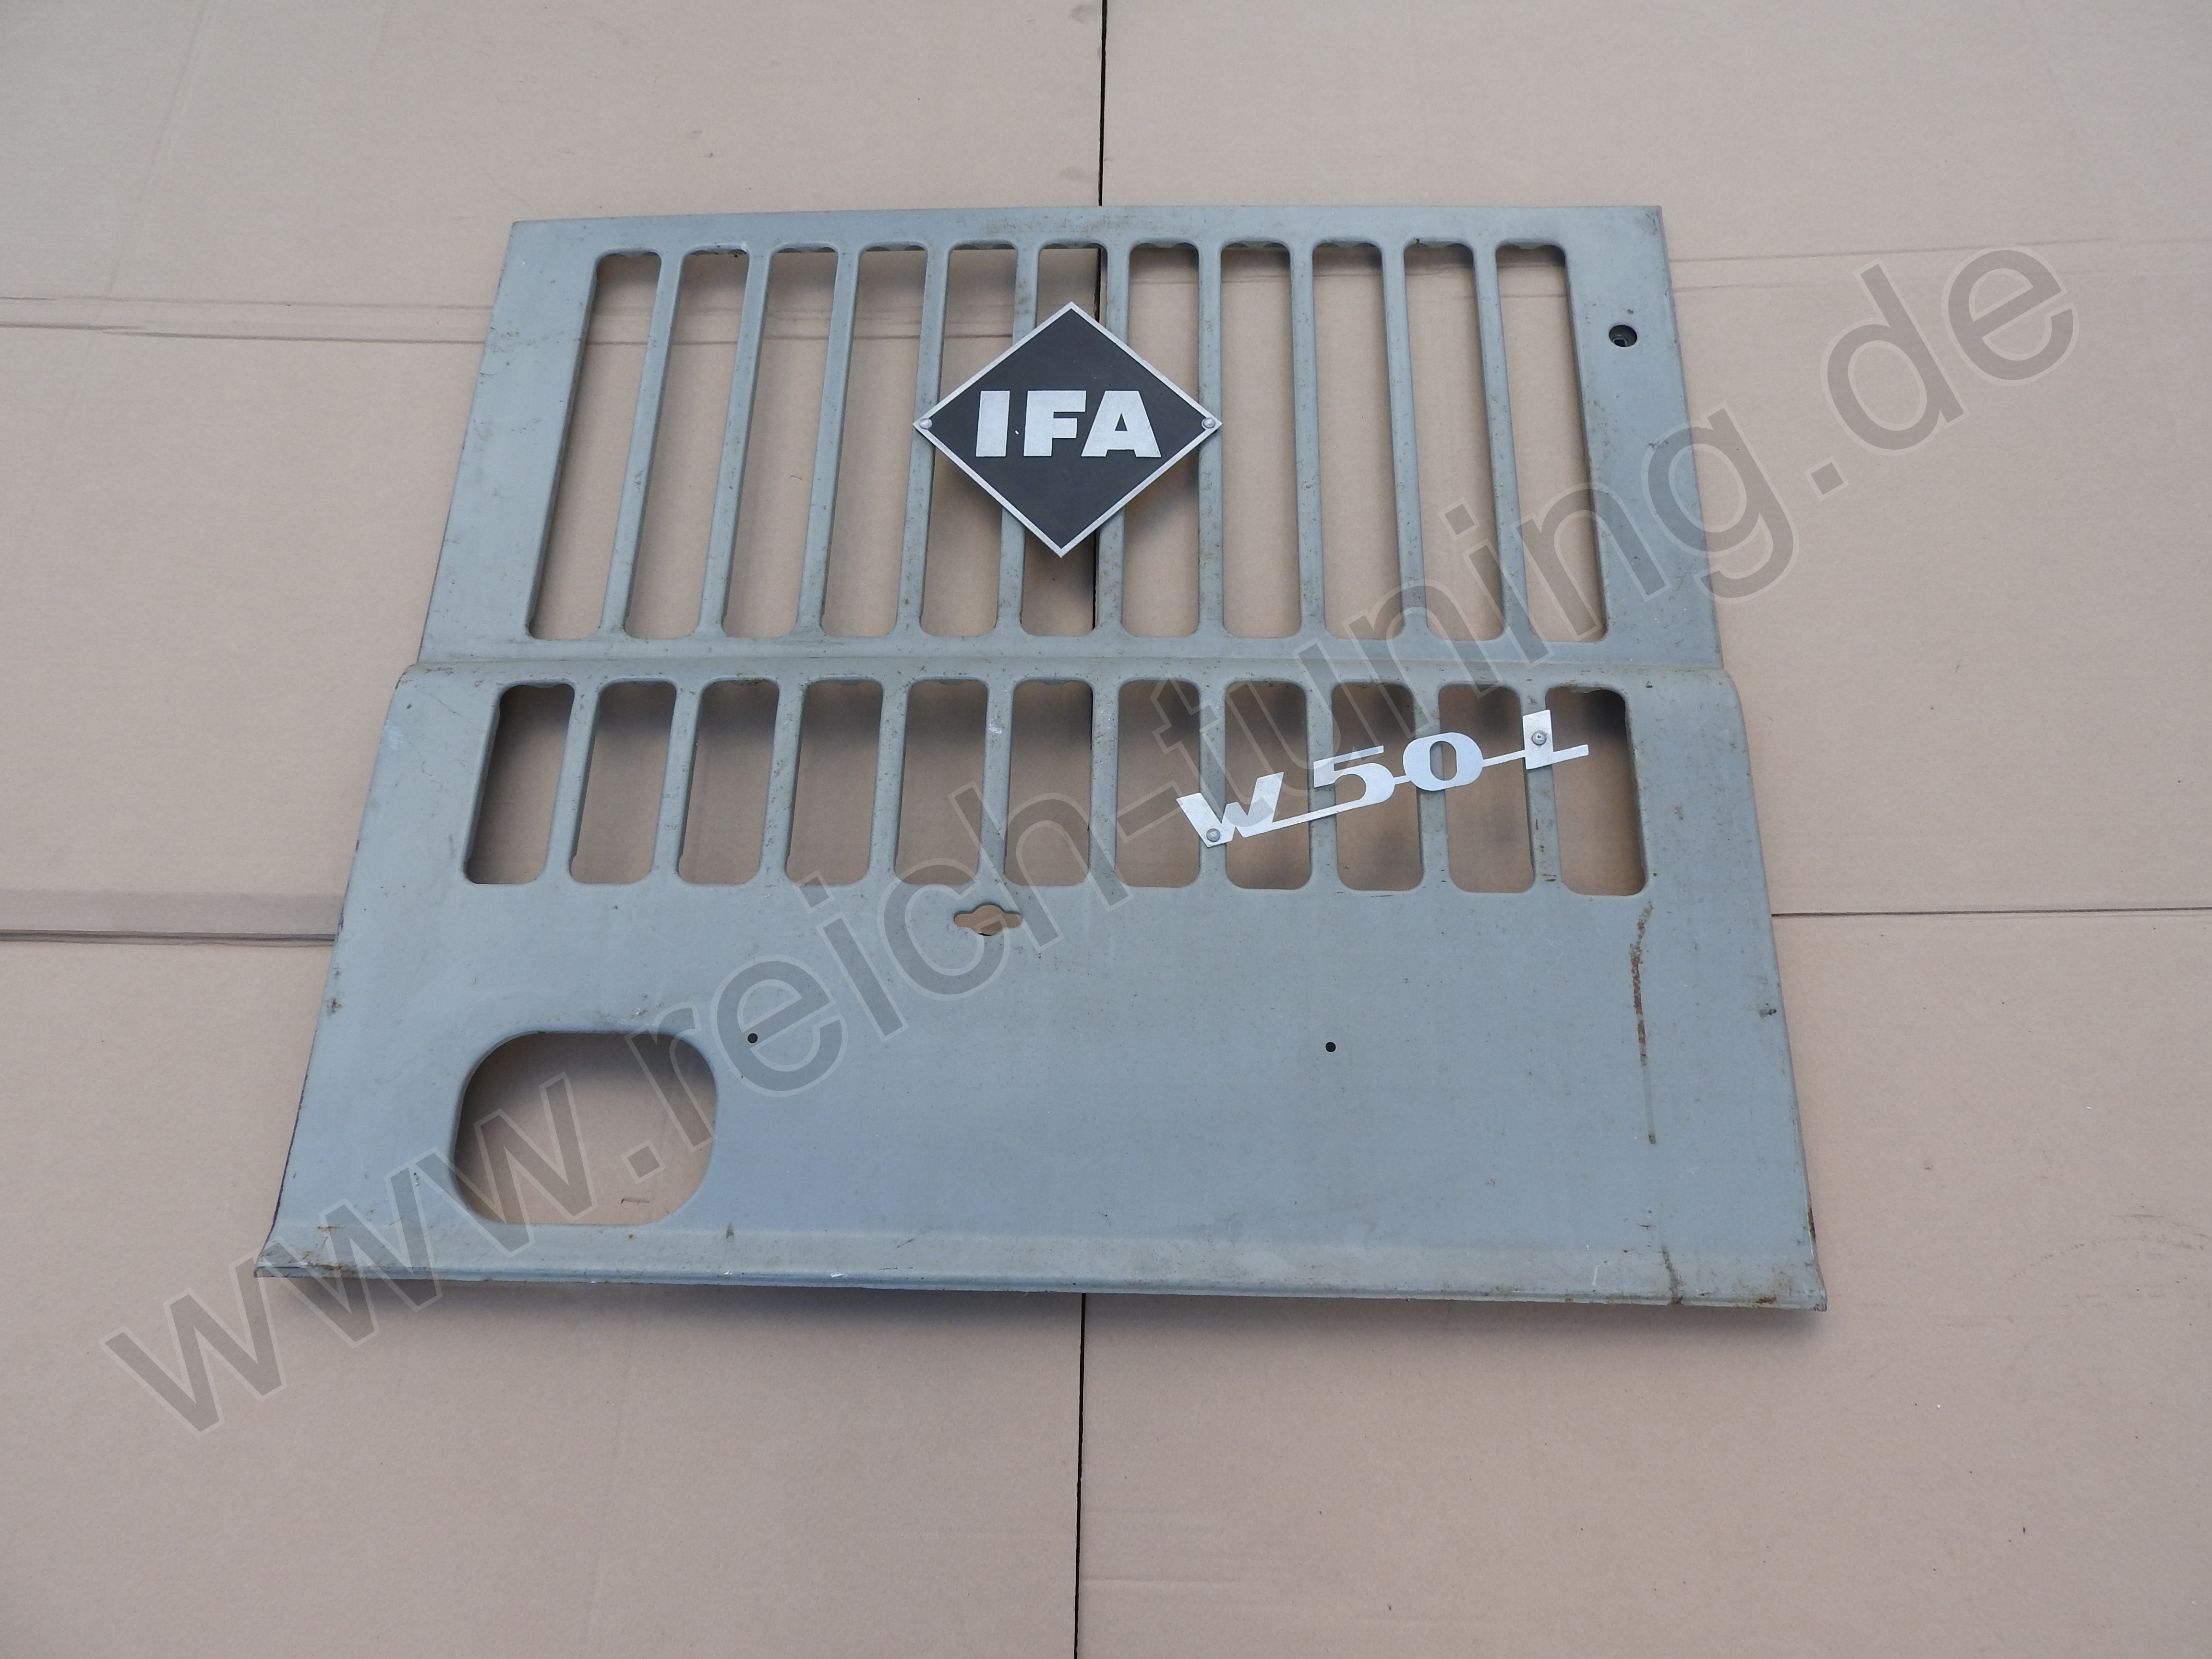 Kühlergrill für IFA W50 mit Emblemen